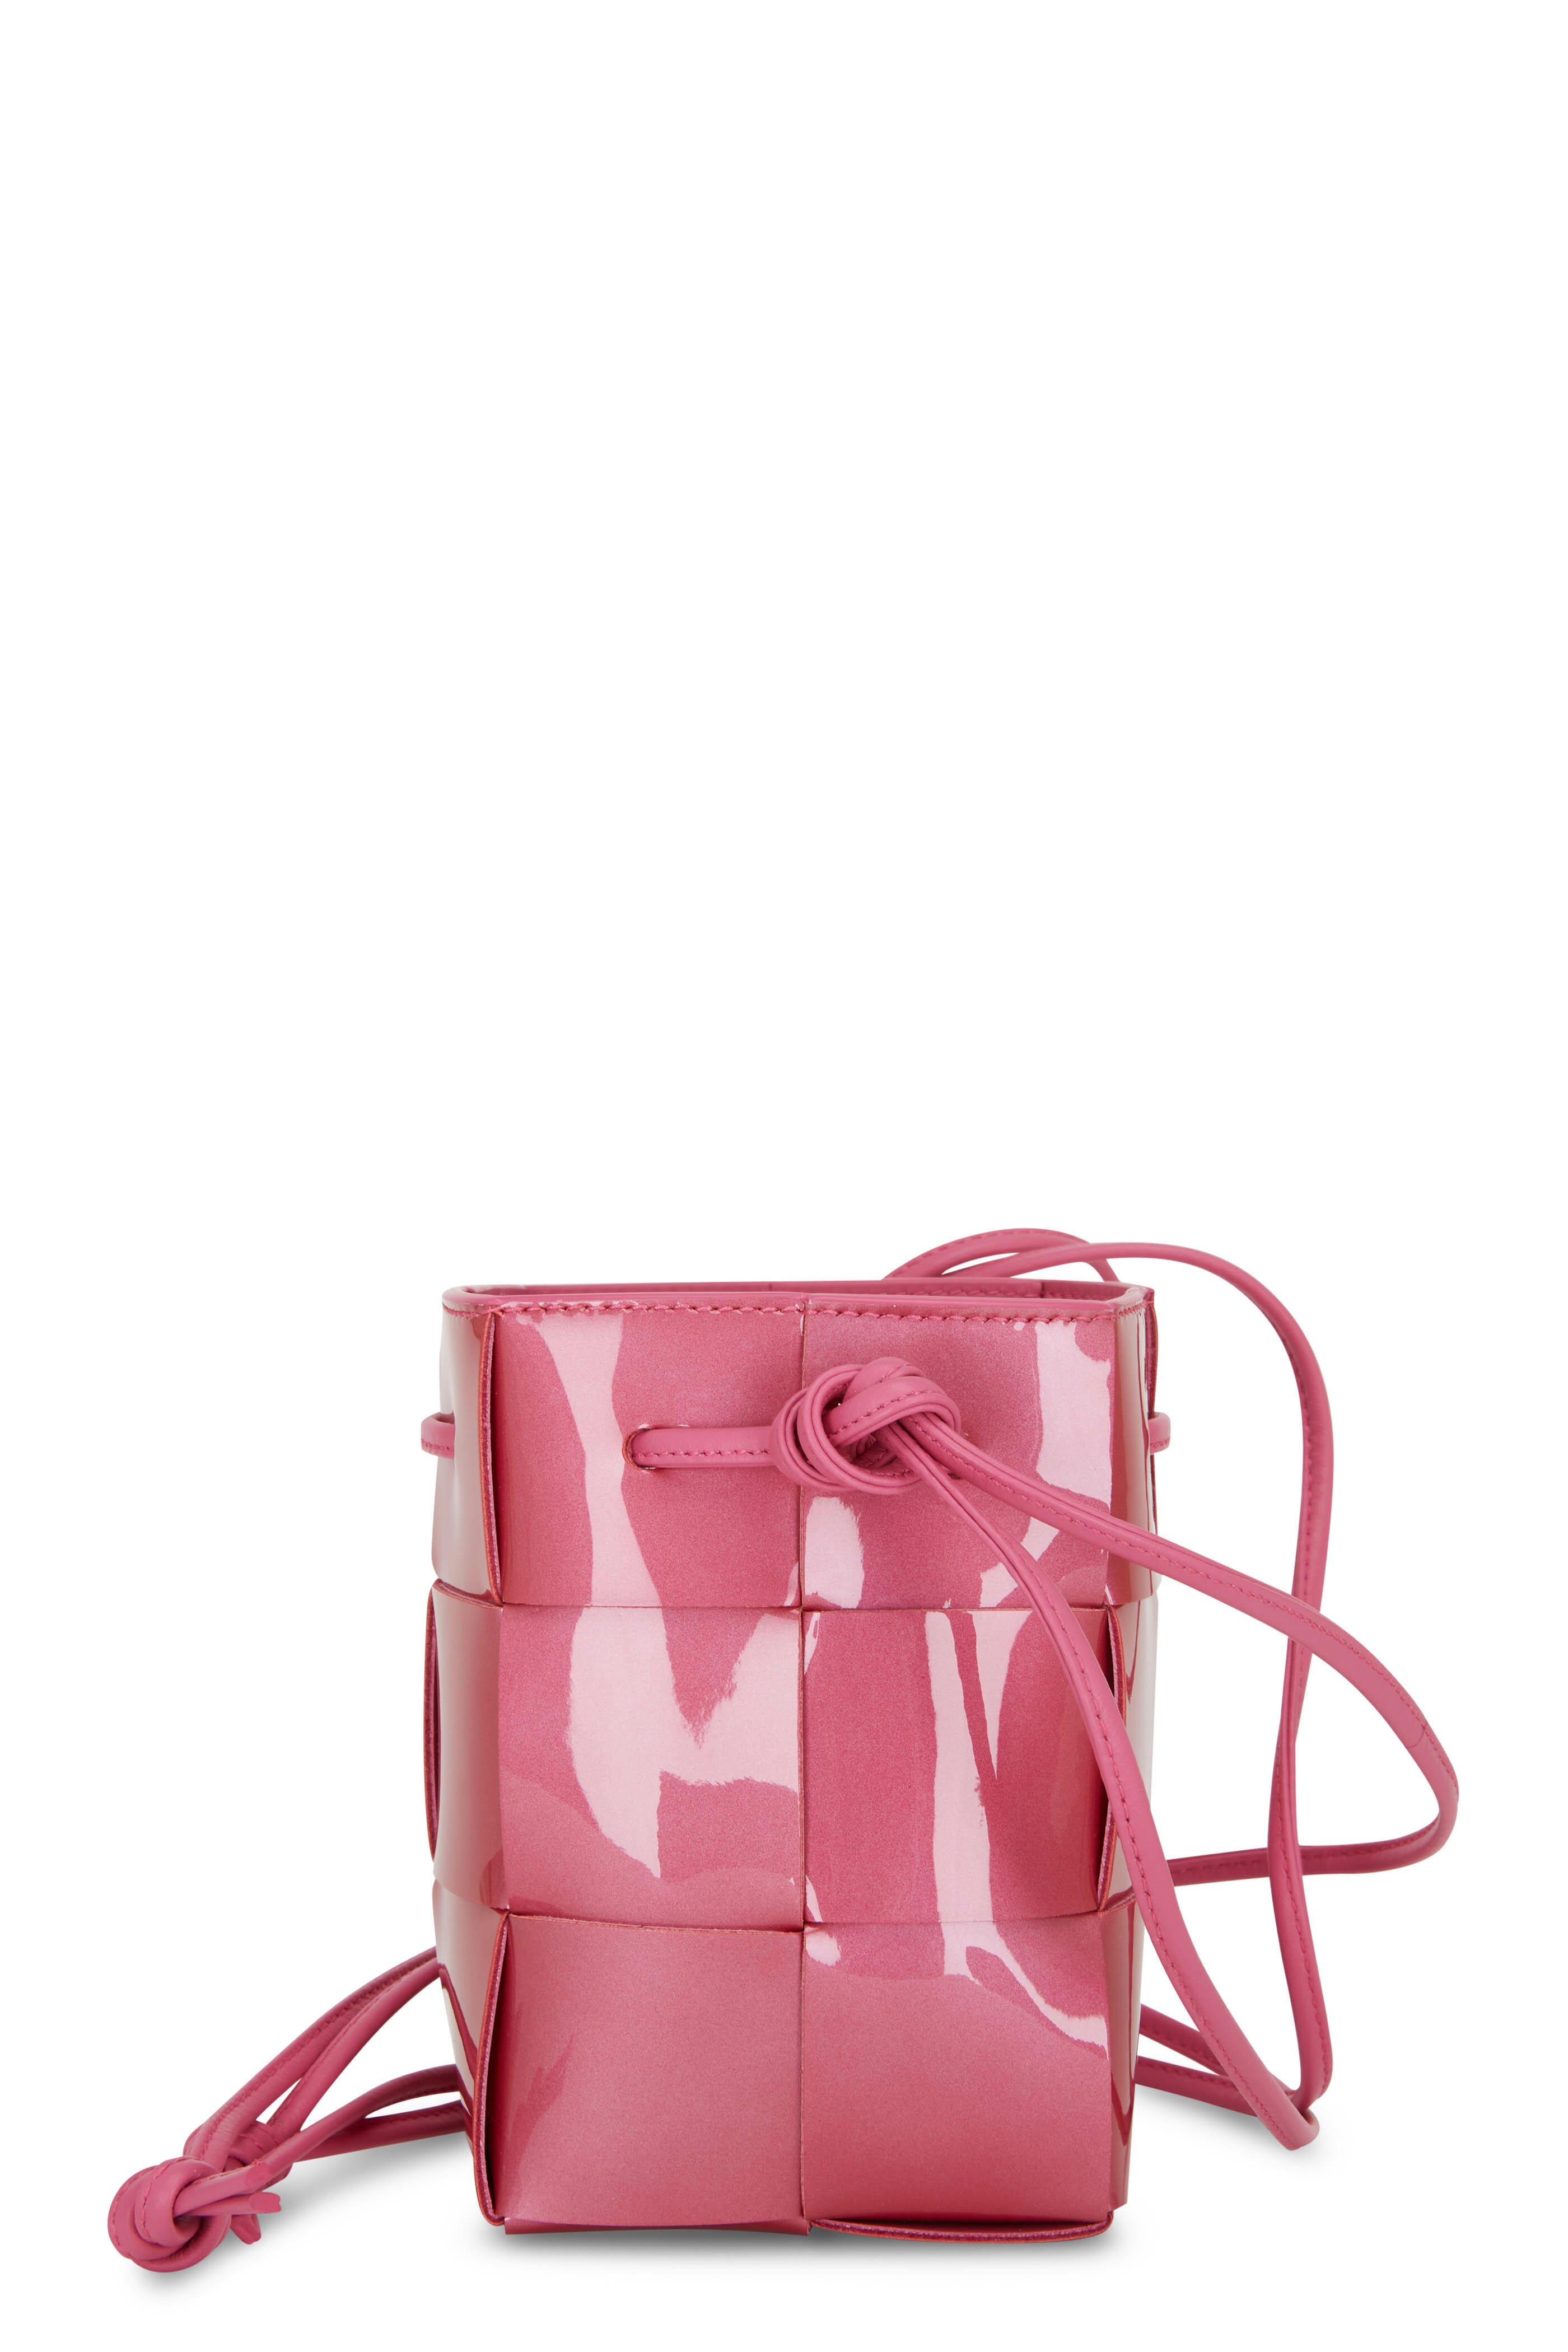 Bottega Veneta - Pink Woven Patent Leather Mini Bucket Bag